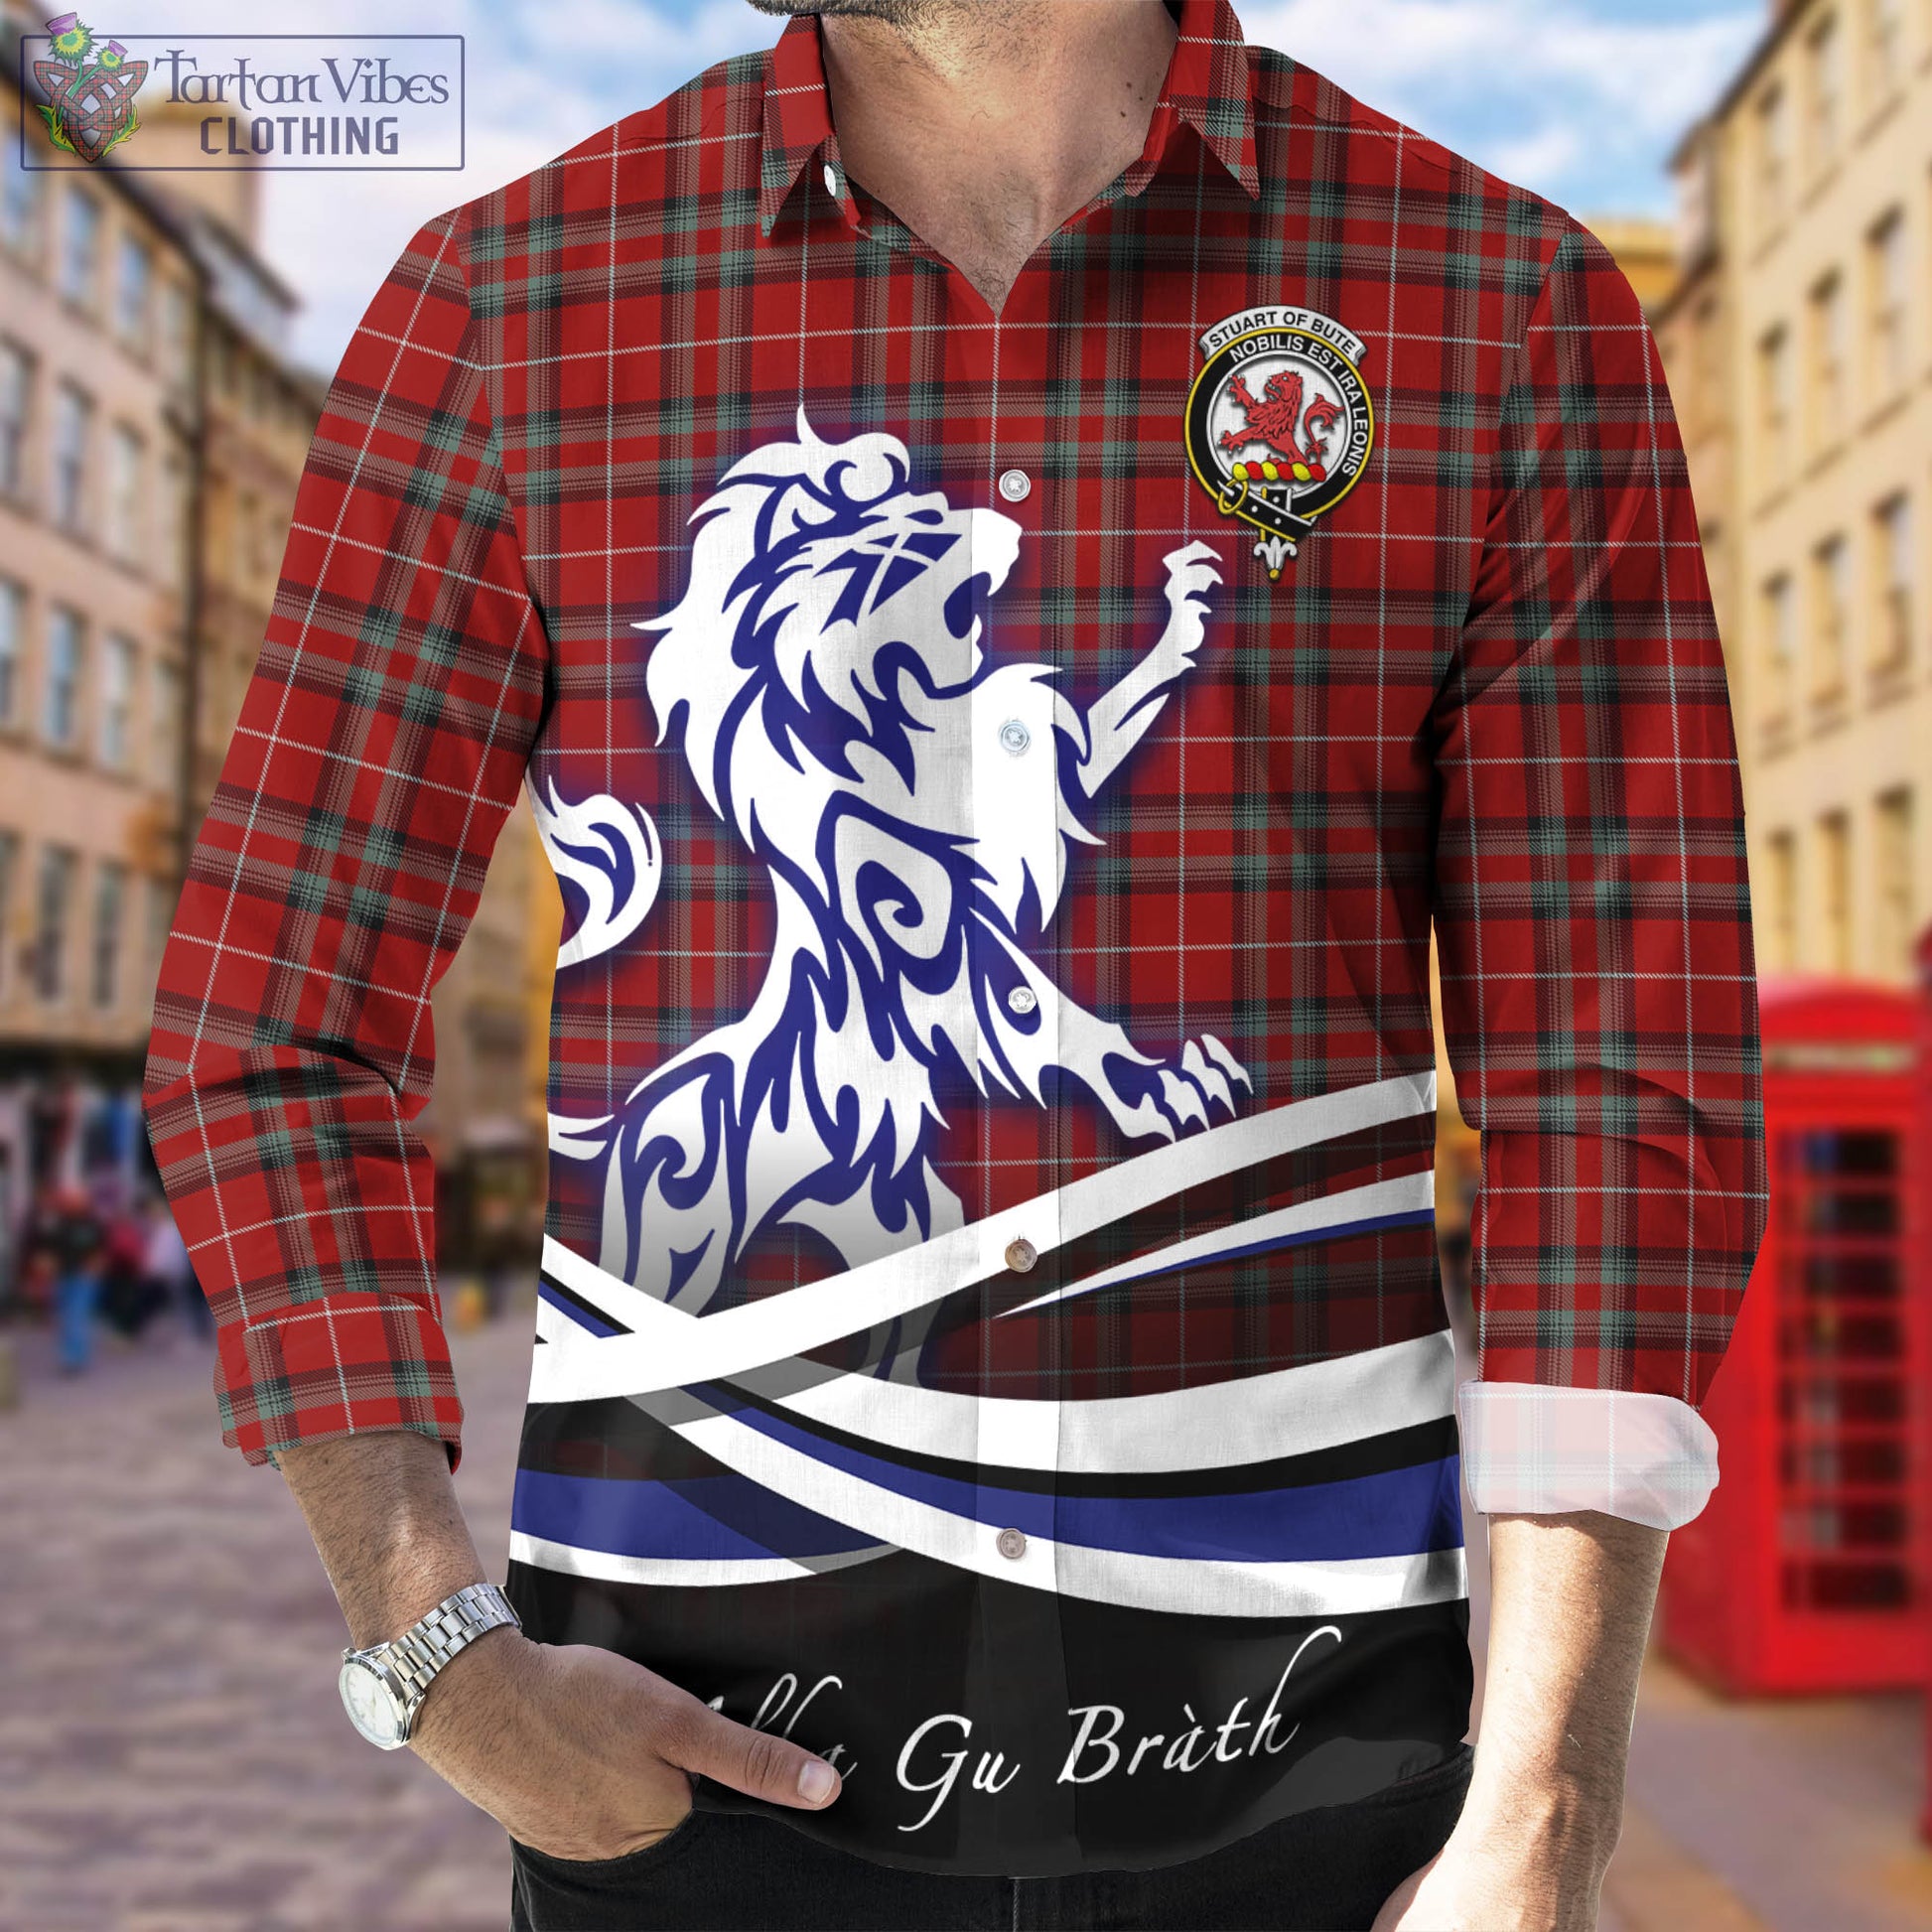 stuart-of-bute-tartan-long-sleeve-button-up-shirt-with-alba-gu-brath-regal-lion-emblem